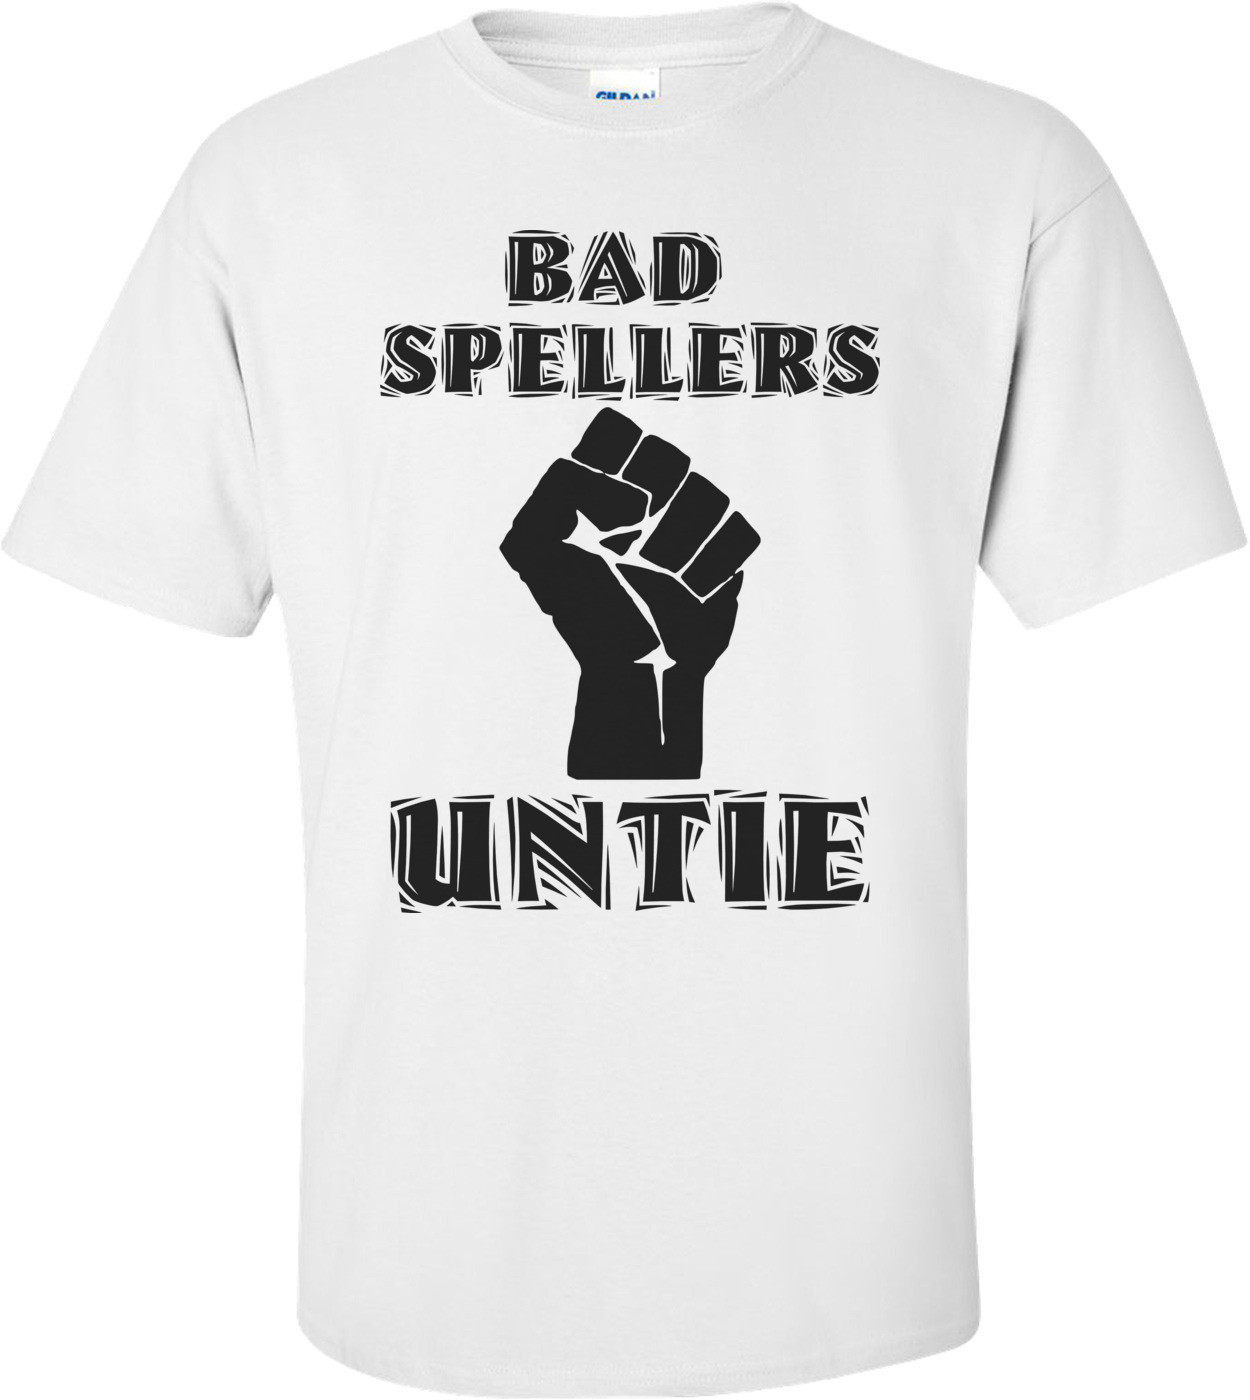 Bad Spellers Untie Shirt